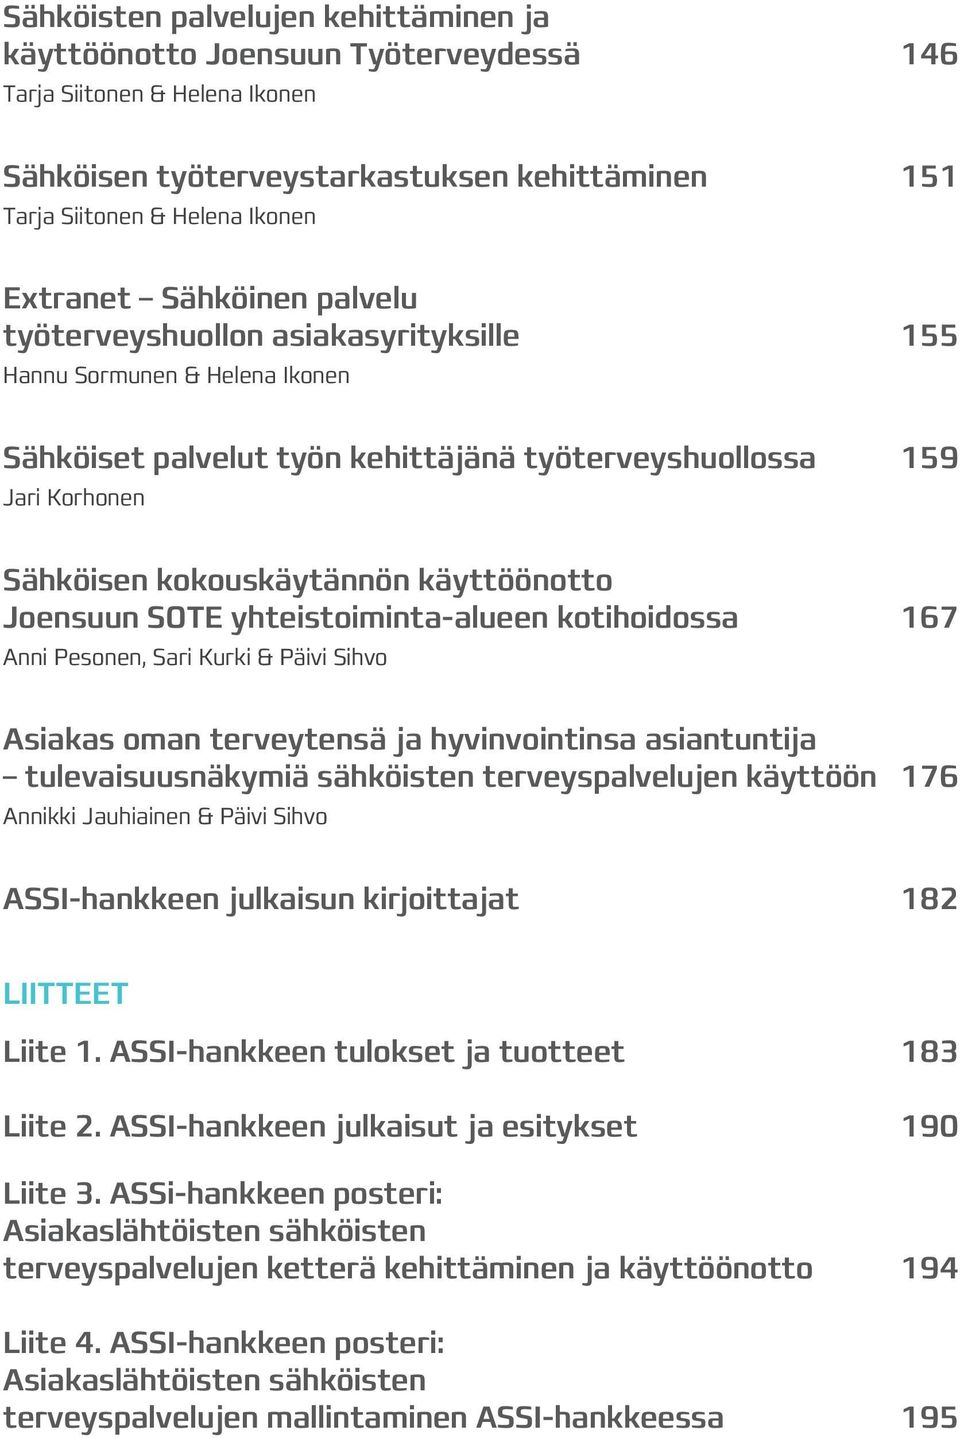 käyttöönotto Joensuun SOTE yhteistoiminta-alueen kotihoidossa 167 Anni Pesonen, Sari Kurki & Päivi Sihvo Asiakas oman terveytensä ja hyvinvointinsa asiantuntija tulevaisuusnäkymiä sähköisten